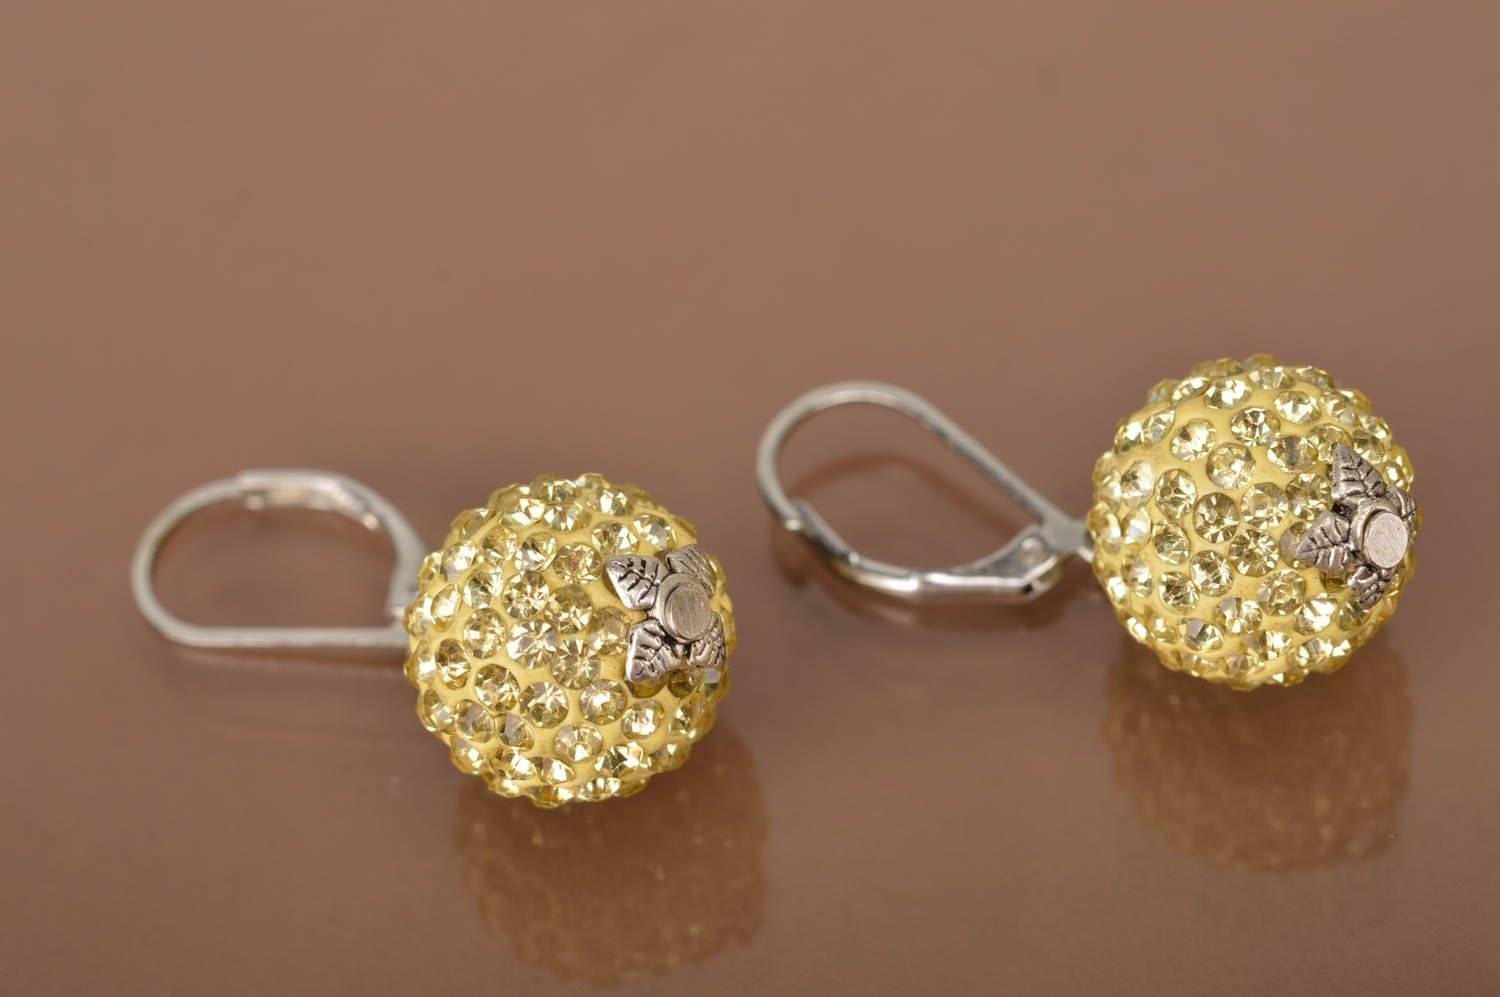 Small handmade metal earrings beaded ball earrings designer jewelry for her photo 5